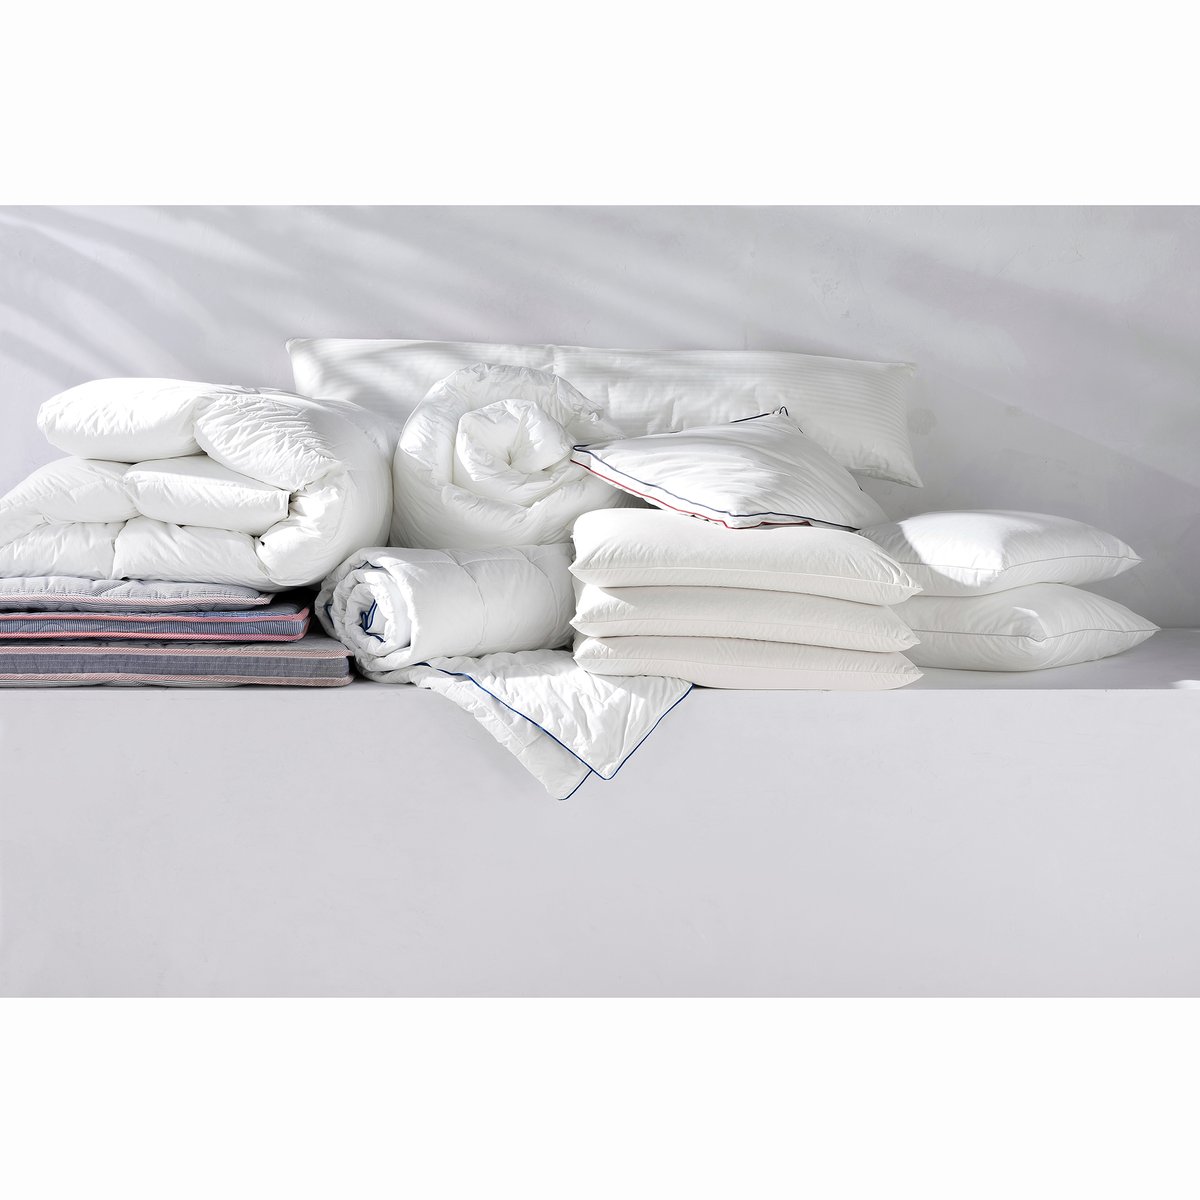 Одеяло La Redoute Из  гусиного пуха гм Miglio 140 x 200 см белый, размер 140 x 200 см - фото 3